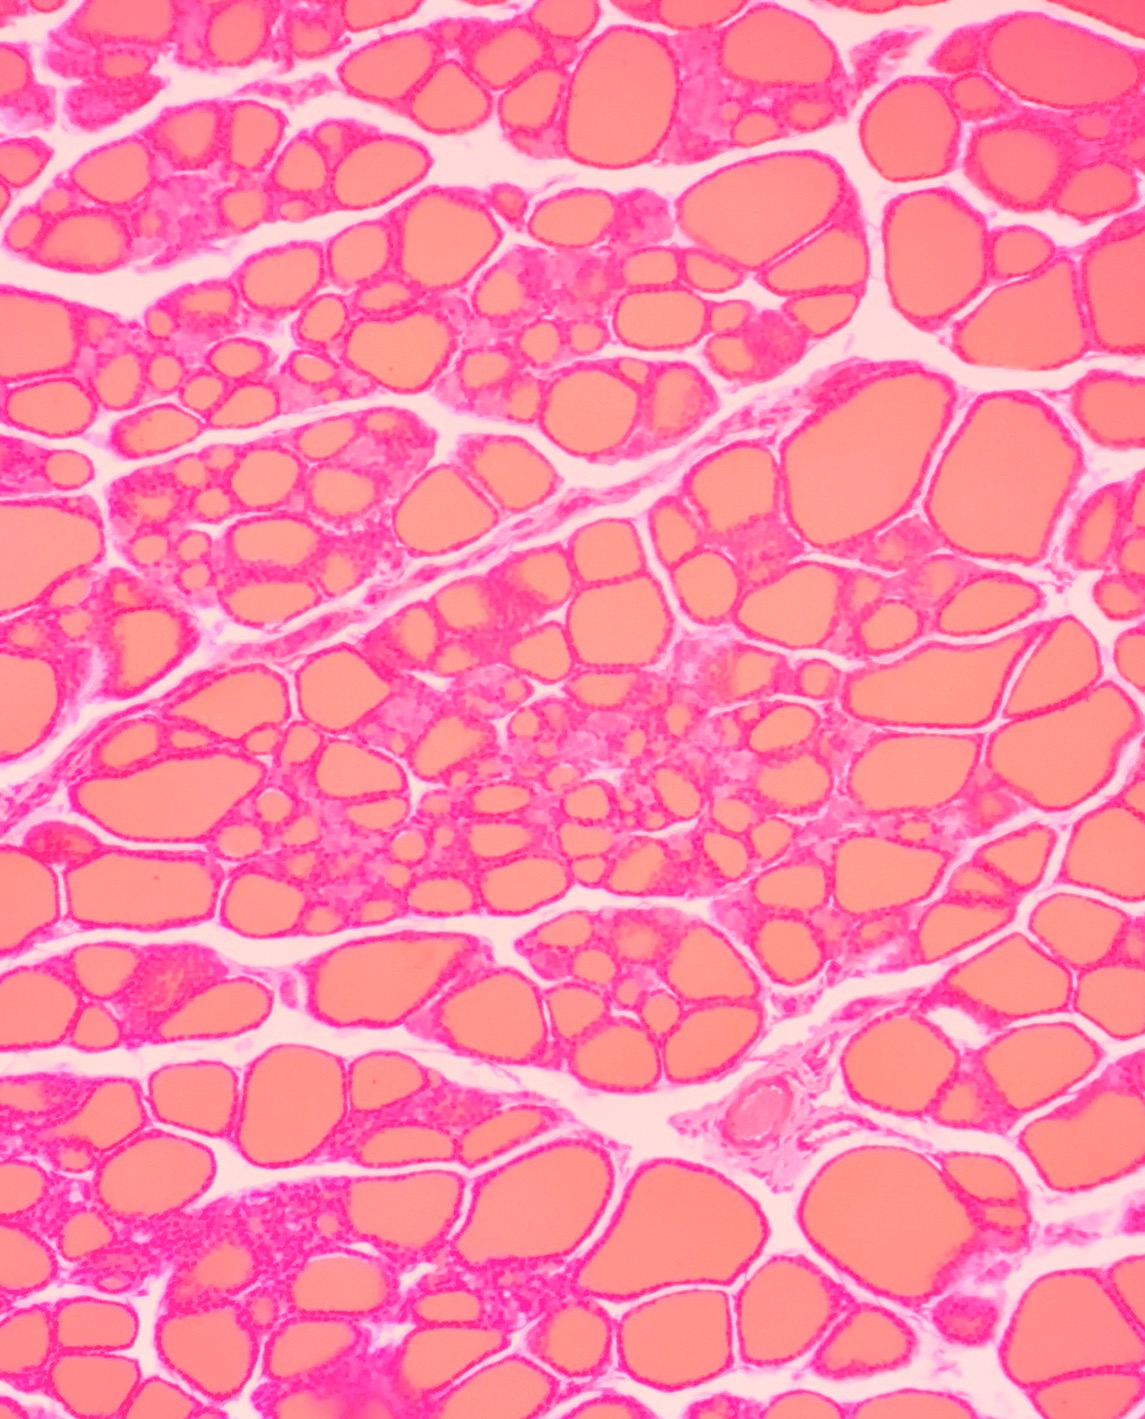 Mikrofotografie tkáně štítné žlázy pořízená pomocí světelného mikroskopu. Jsou na ní oranžově zbarvené útvary, folikuly štítné žlázy.